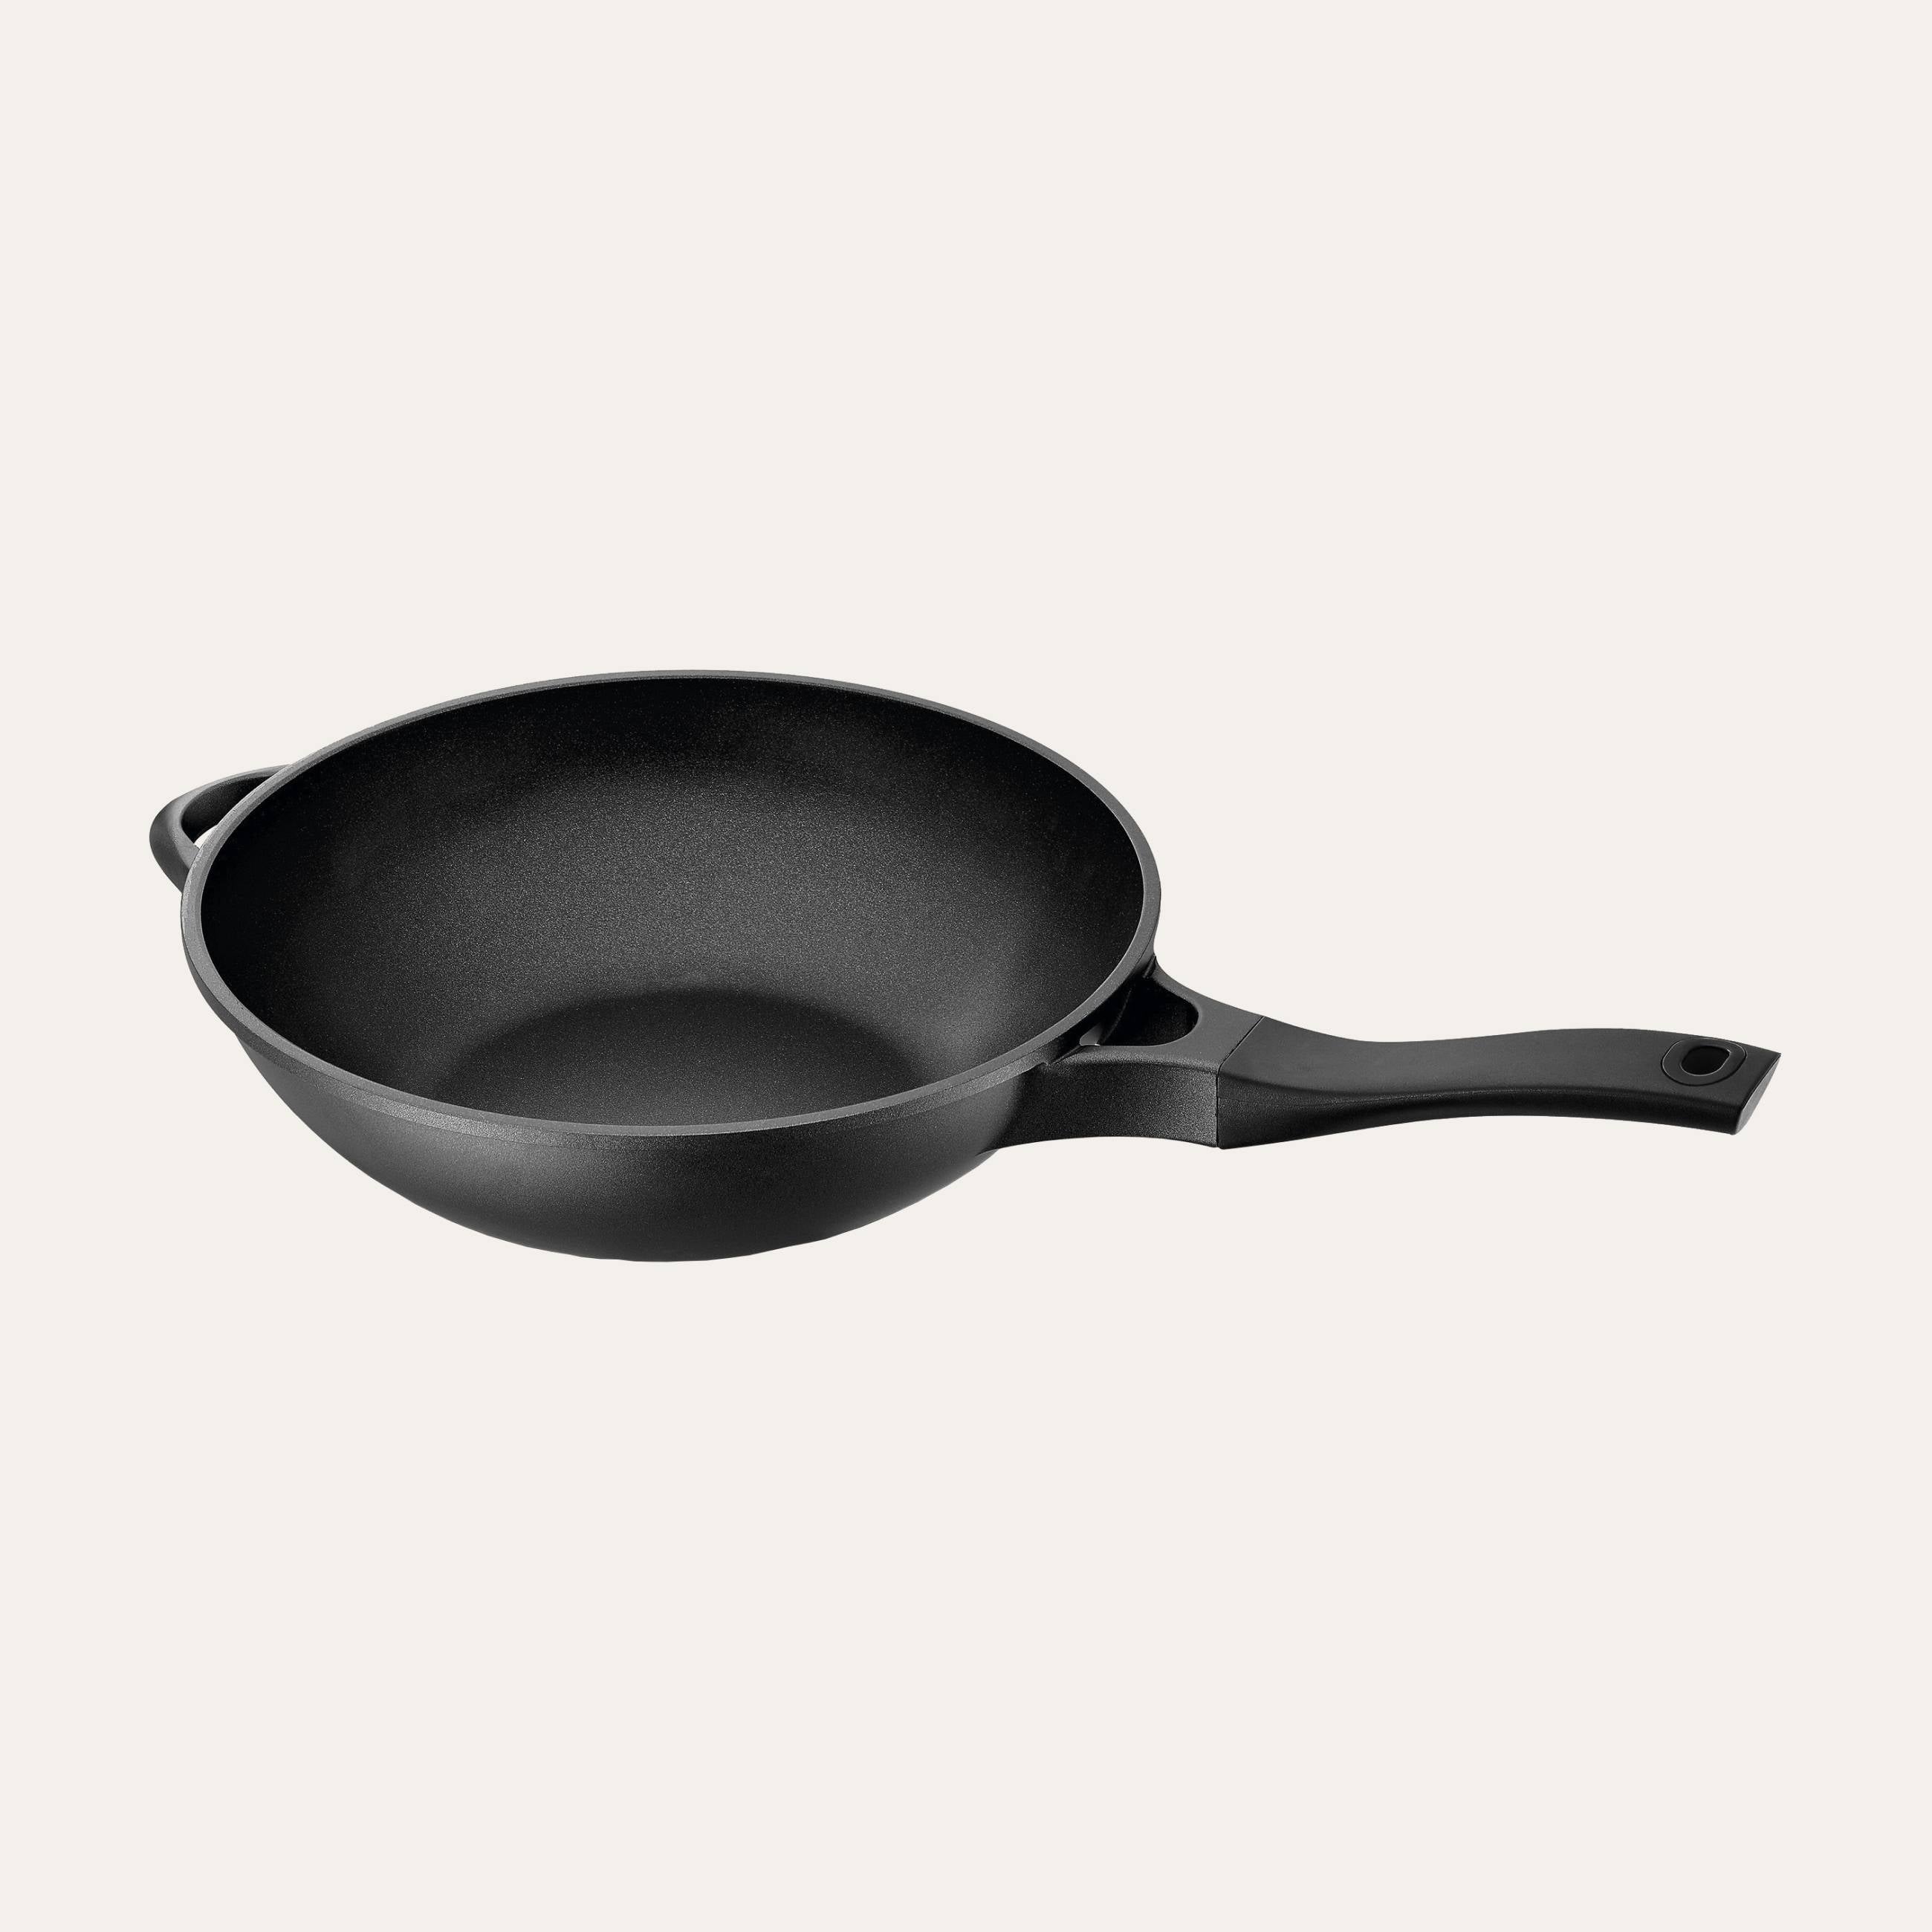 Woks & Stir-fry Pans, Griddle, Chef's Pans, Non-stick Aluminum